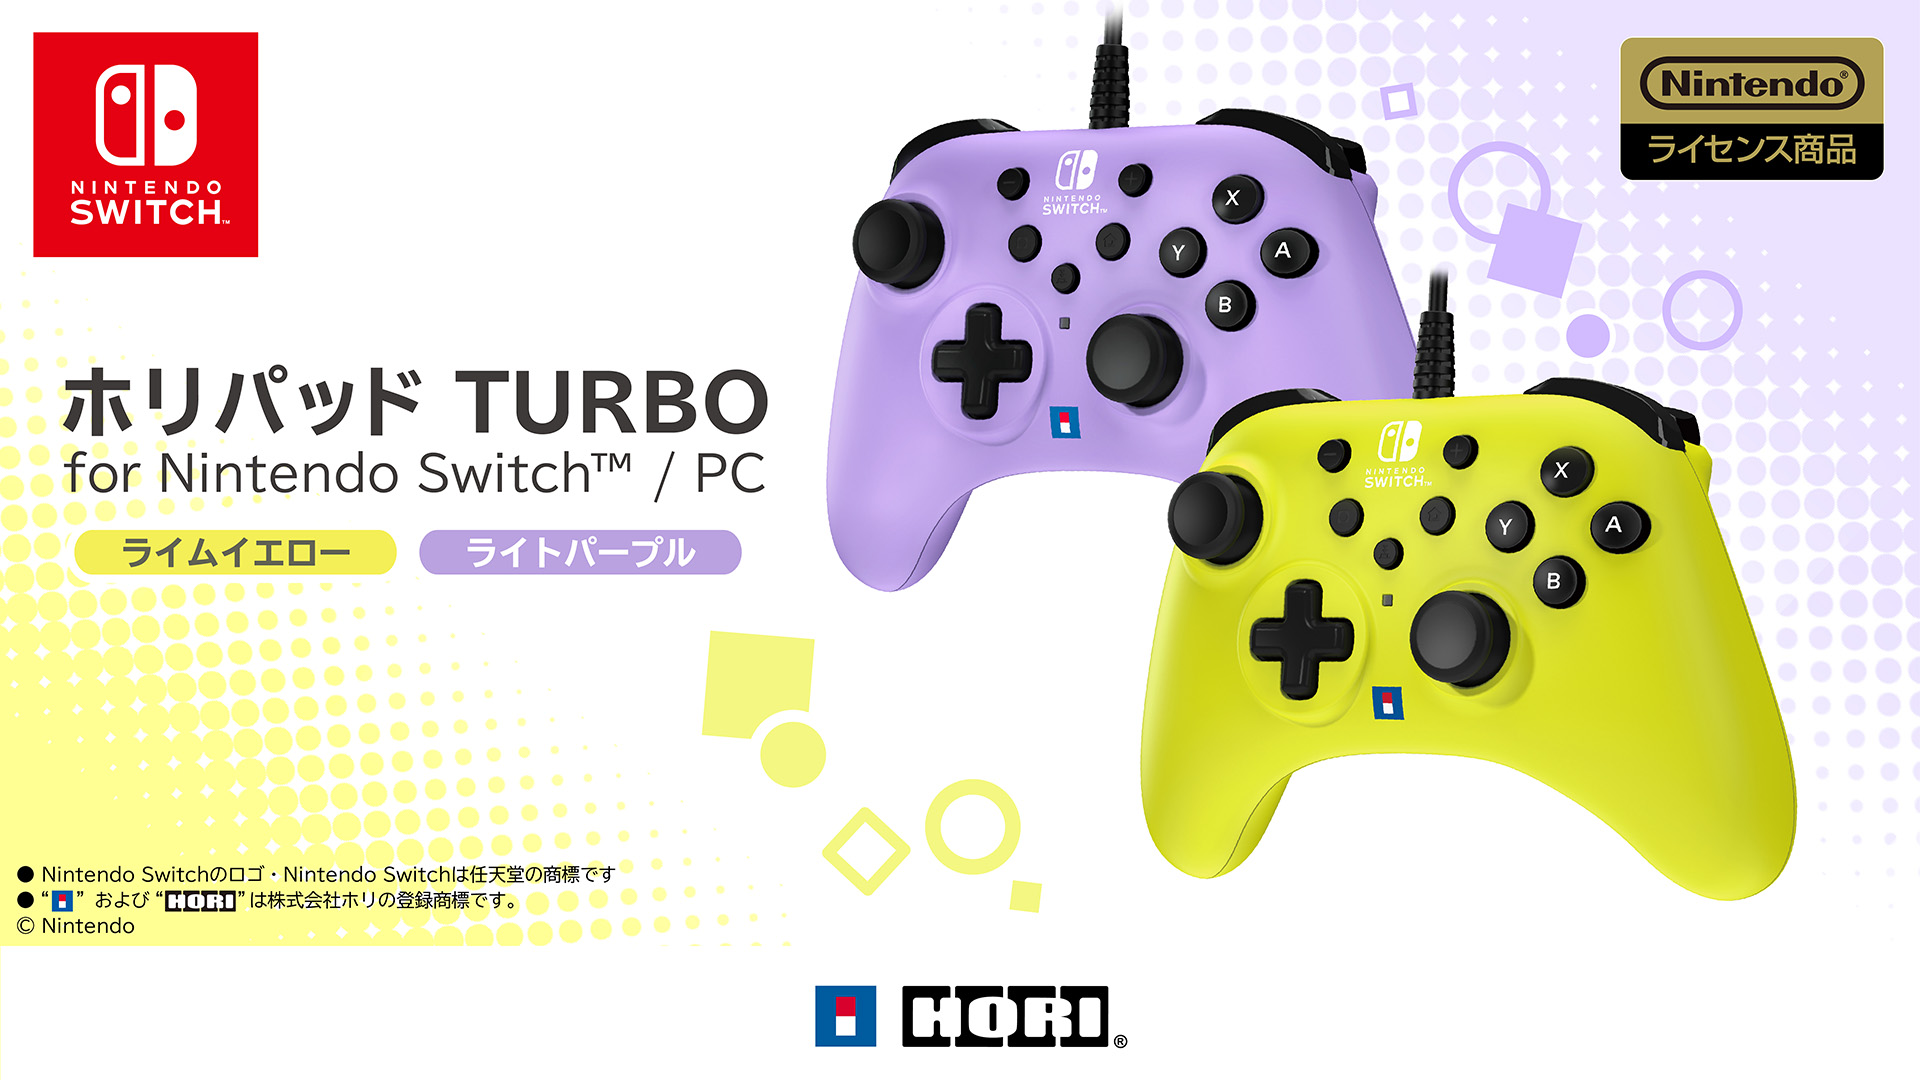 ホリパッド TURBO for Nintendo Switch/PC」にライトパープル/ライム